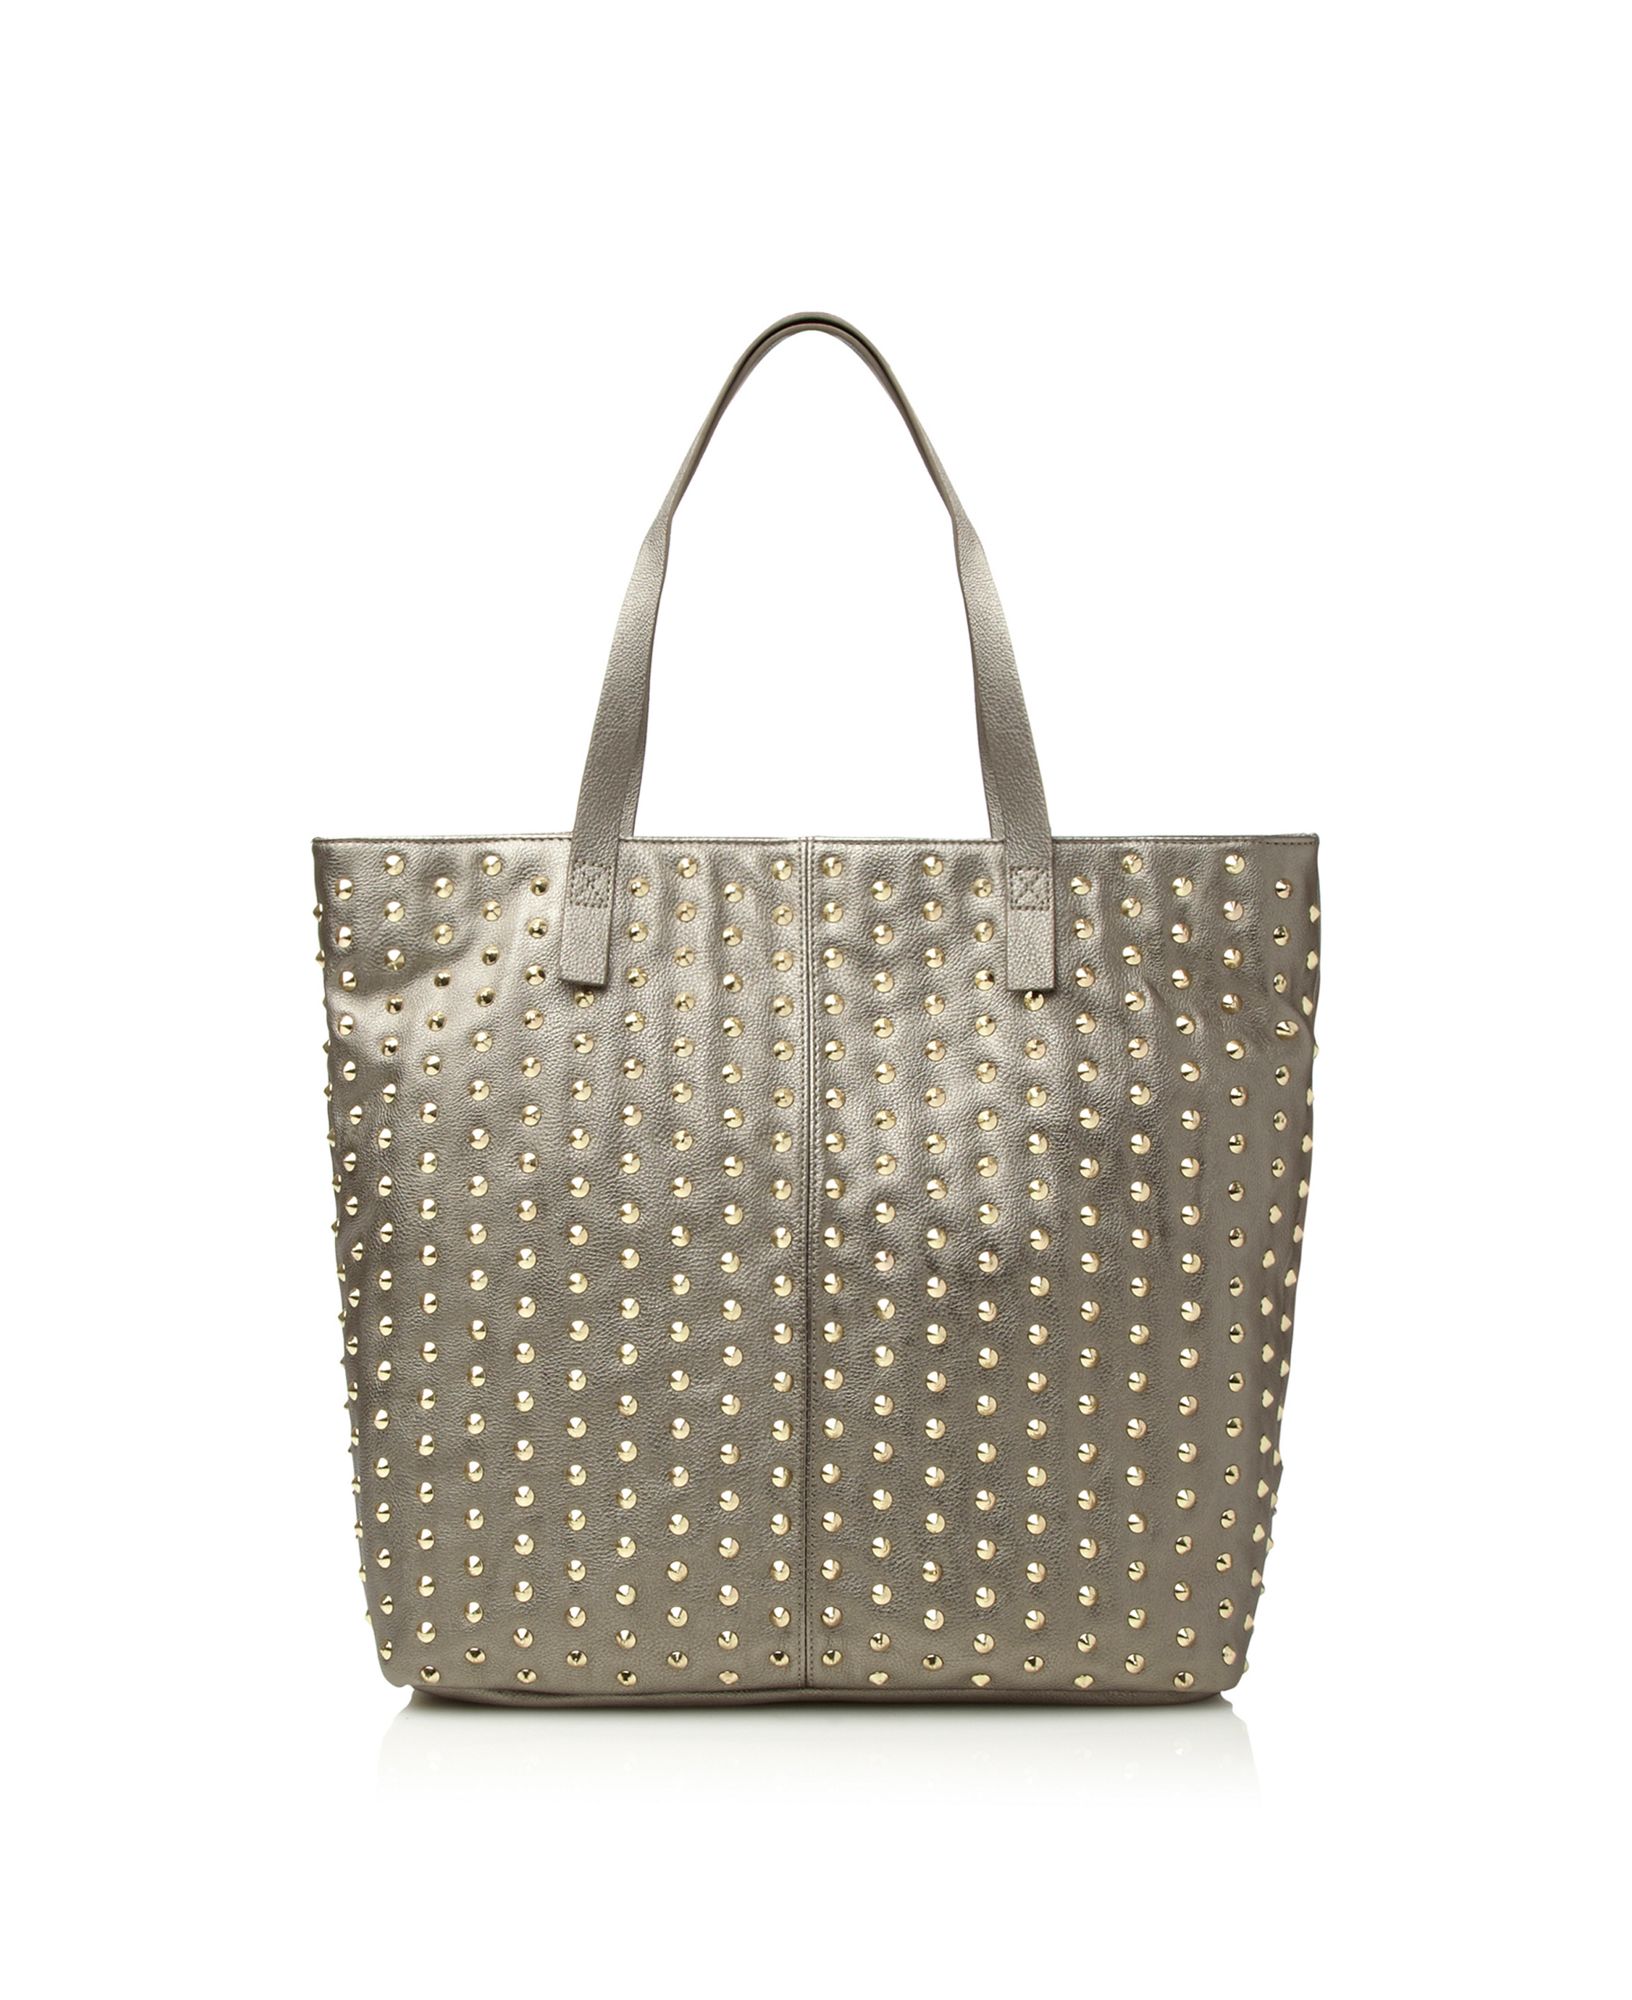 Steve Madden All Over Studded Shopper Bag in Gray (pewter) | Lyst